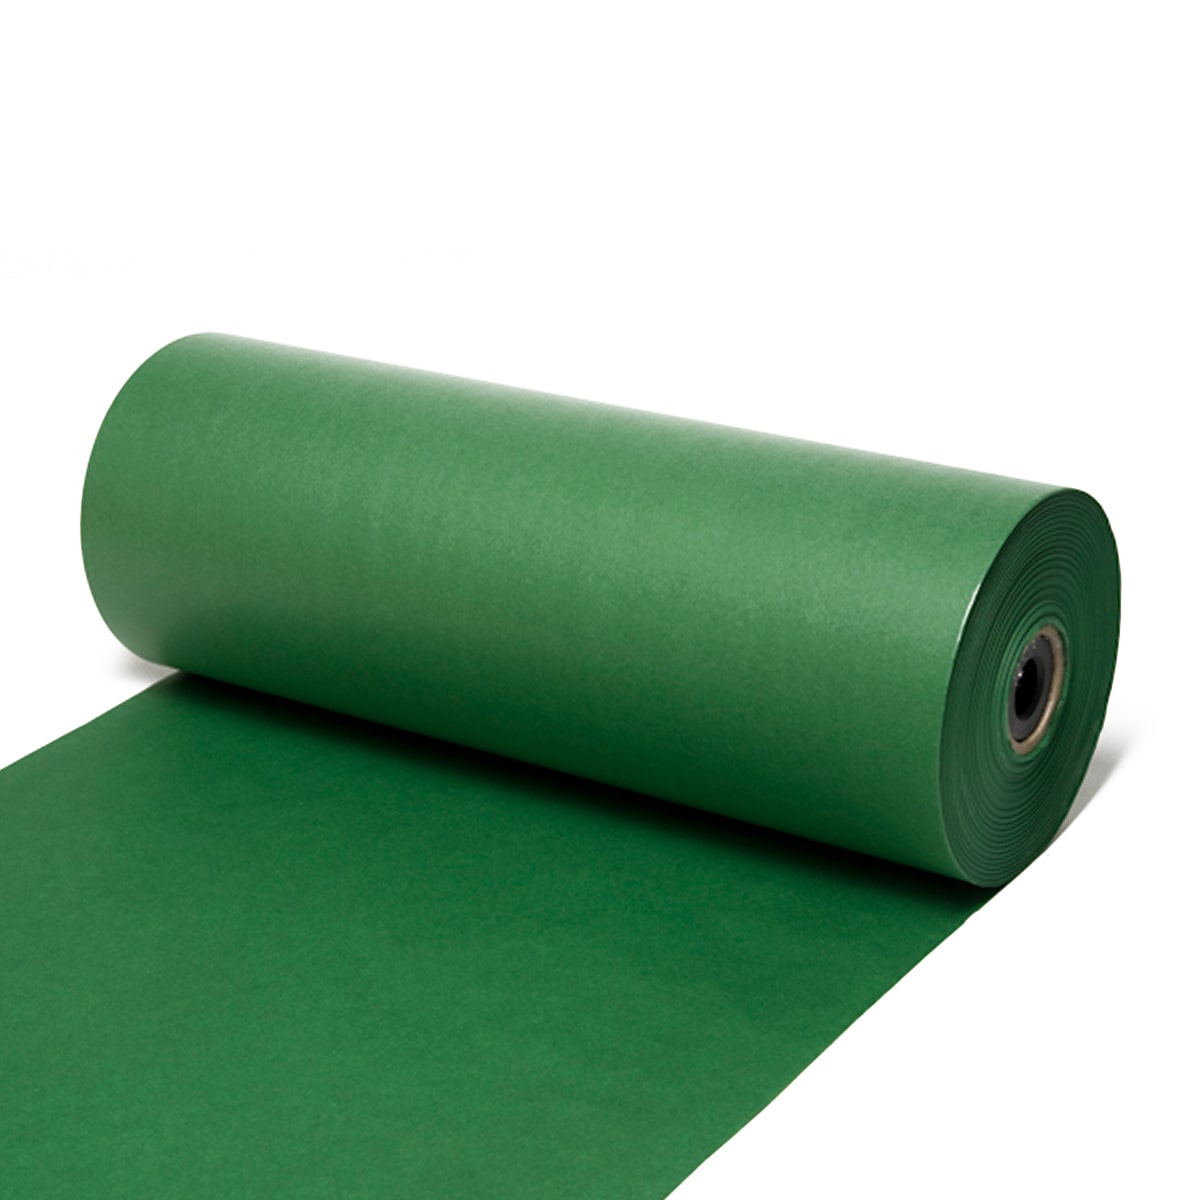 Seidenpapier Tannengrün, 50 / 75 cm breit, 500 Meter / Rolle